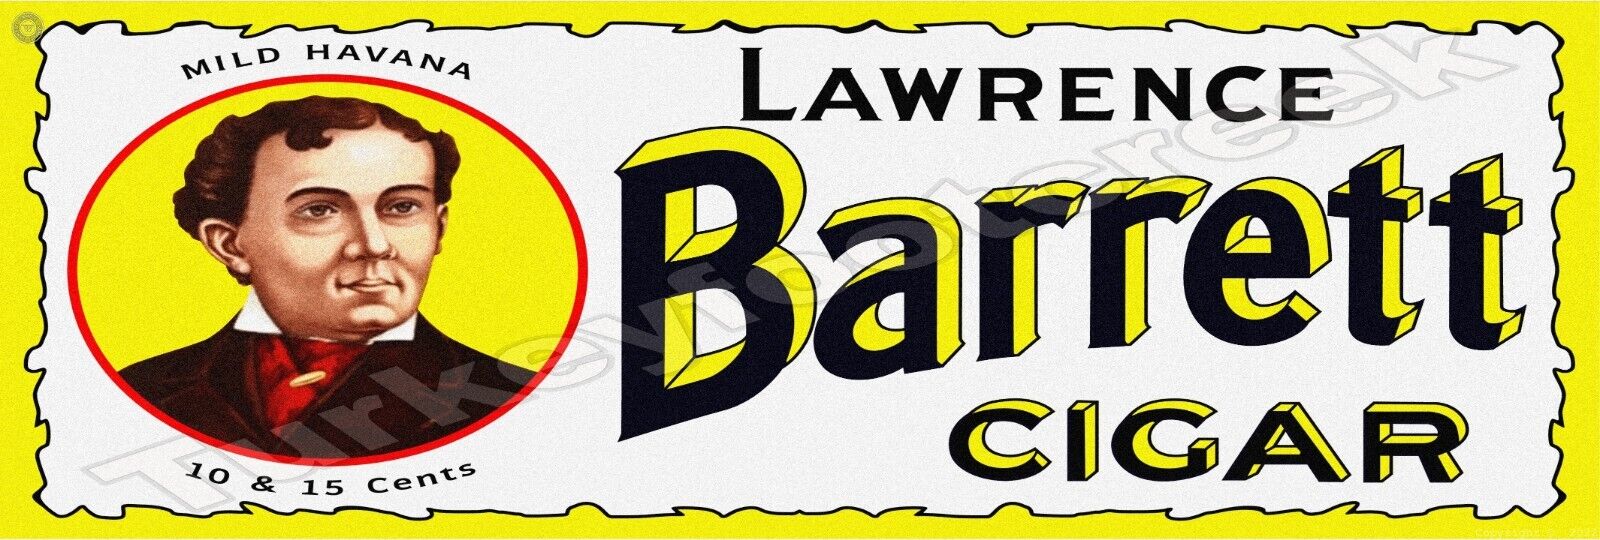 Lawrence Barrett Cigar 6